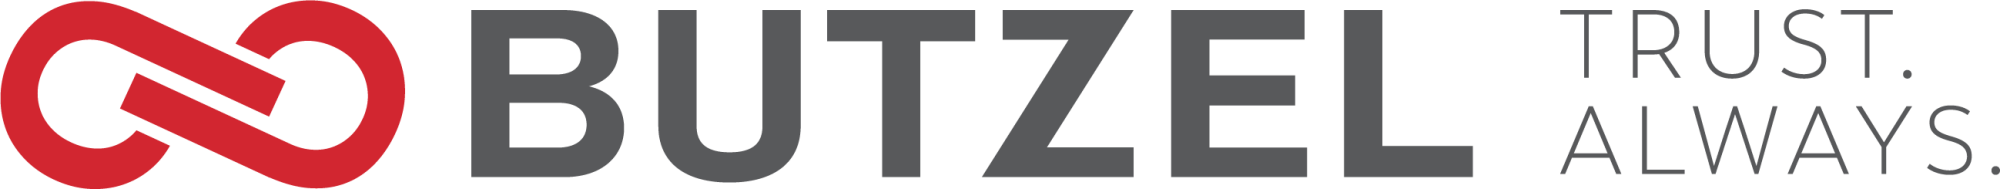 Butzel Trust Always logo